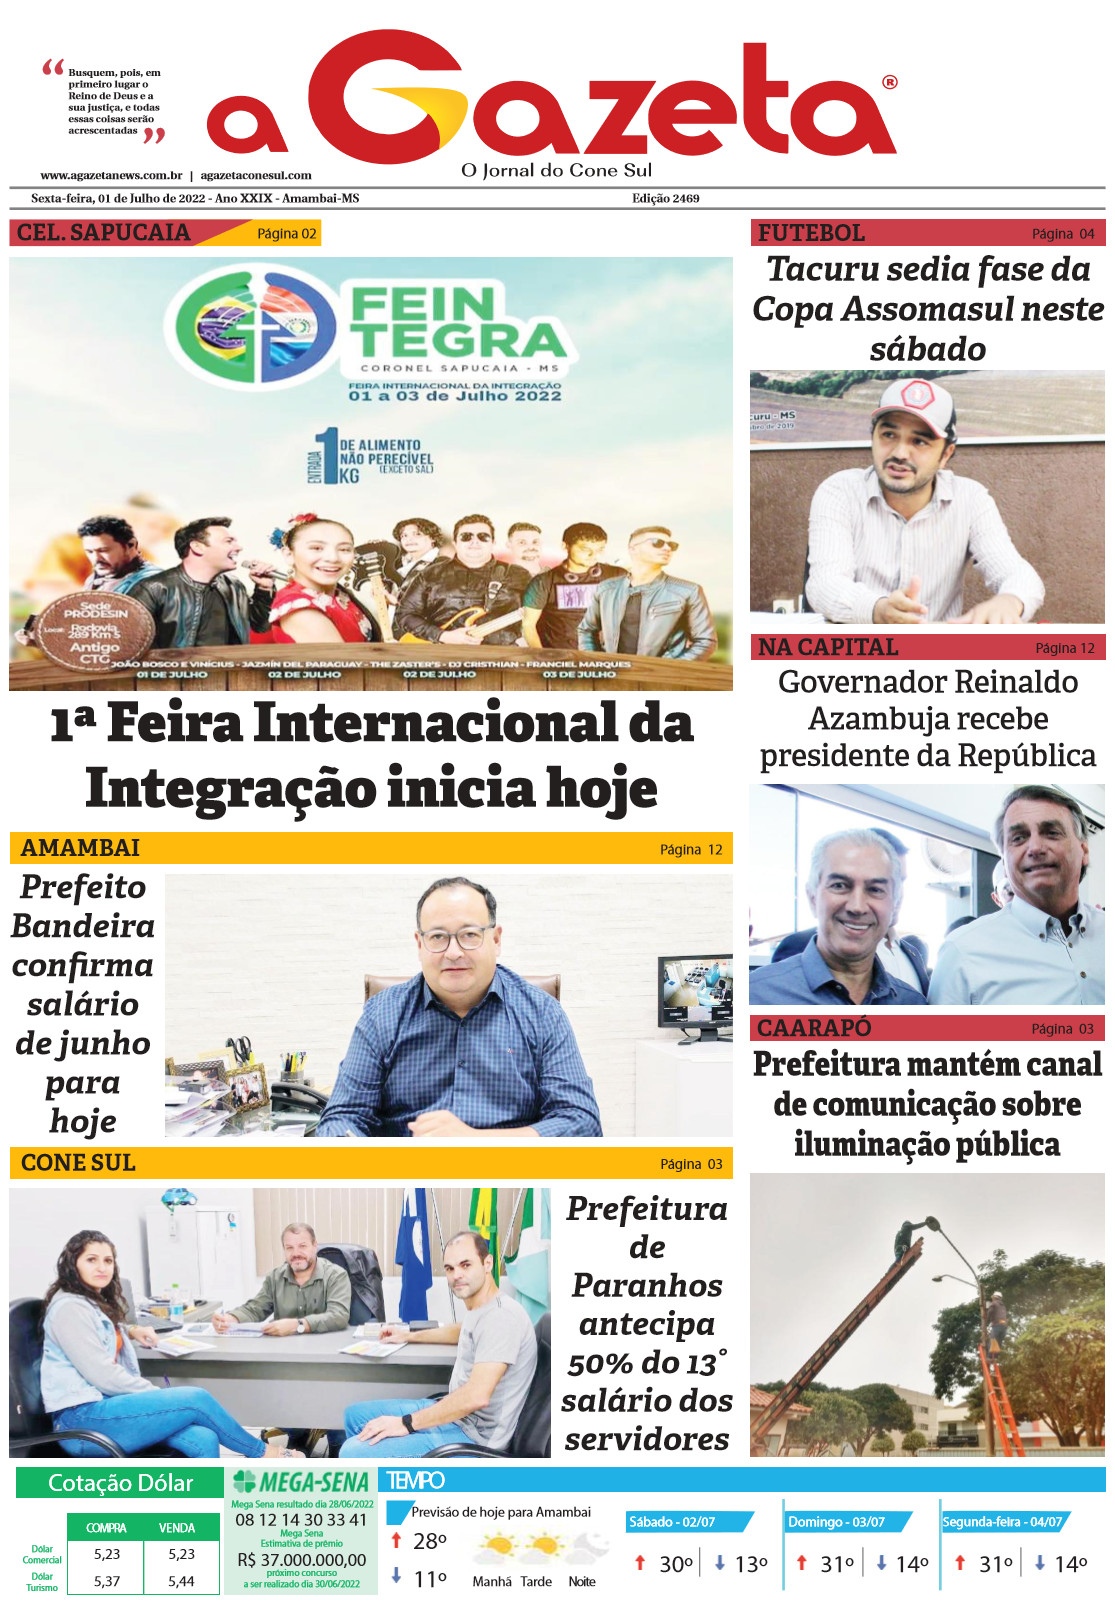 Confira a edição digital do jornal impresso A Gazeta desta sexta-feira, dia 1º